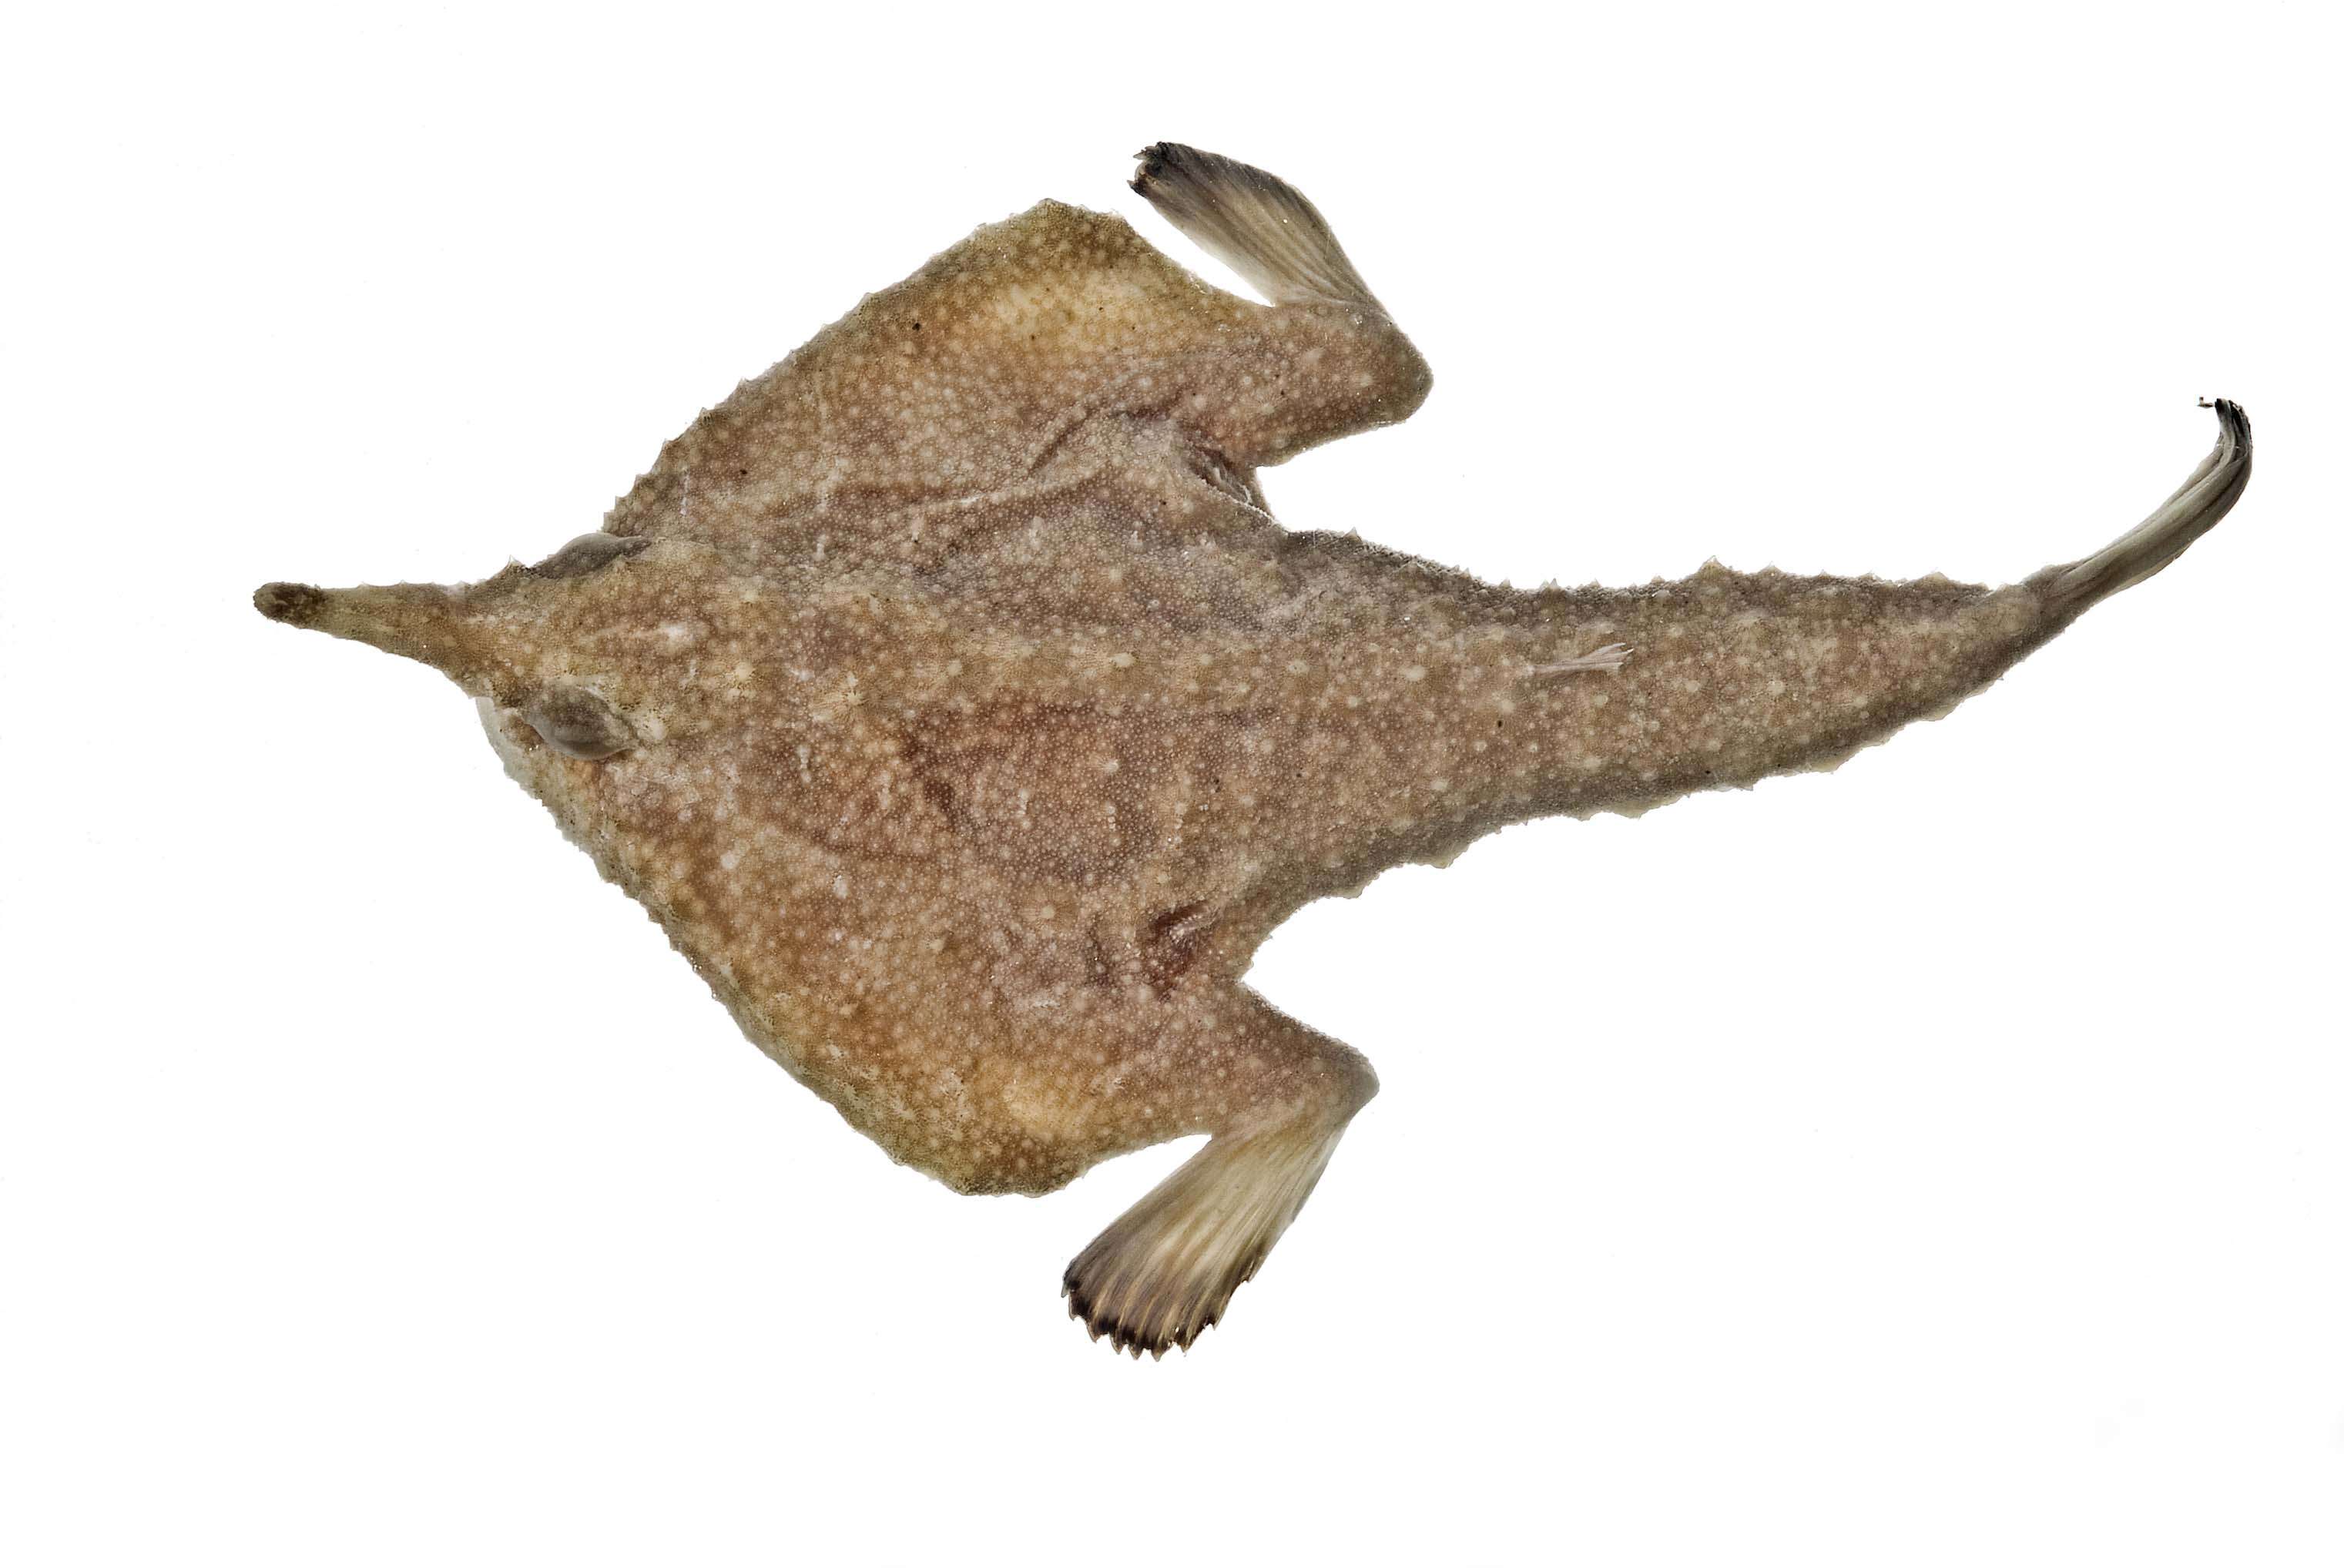 Image of Ogcocephalus